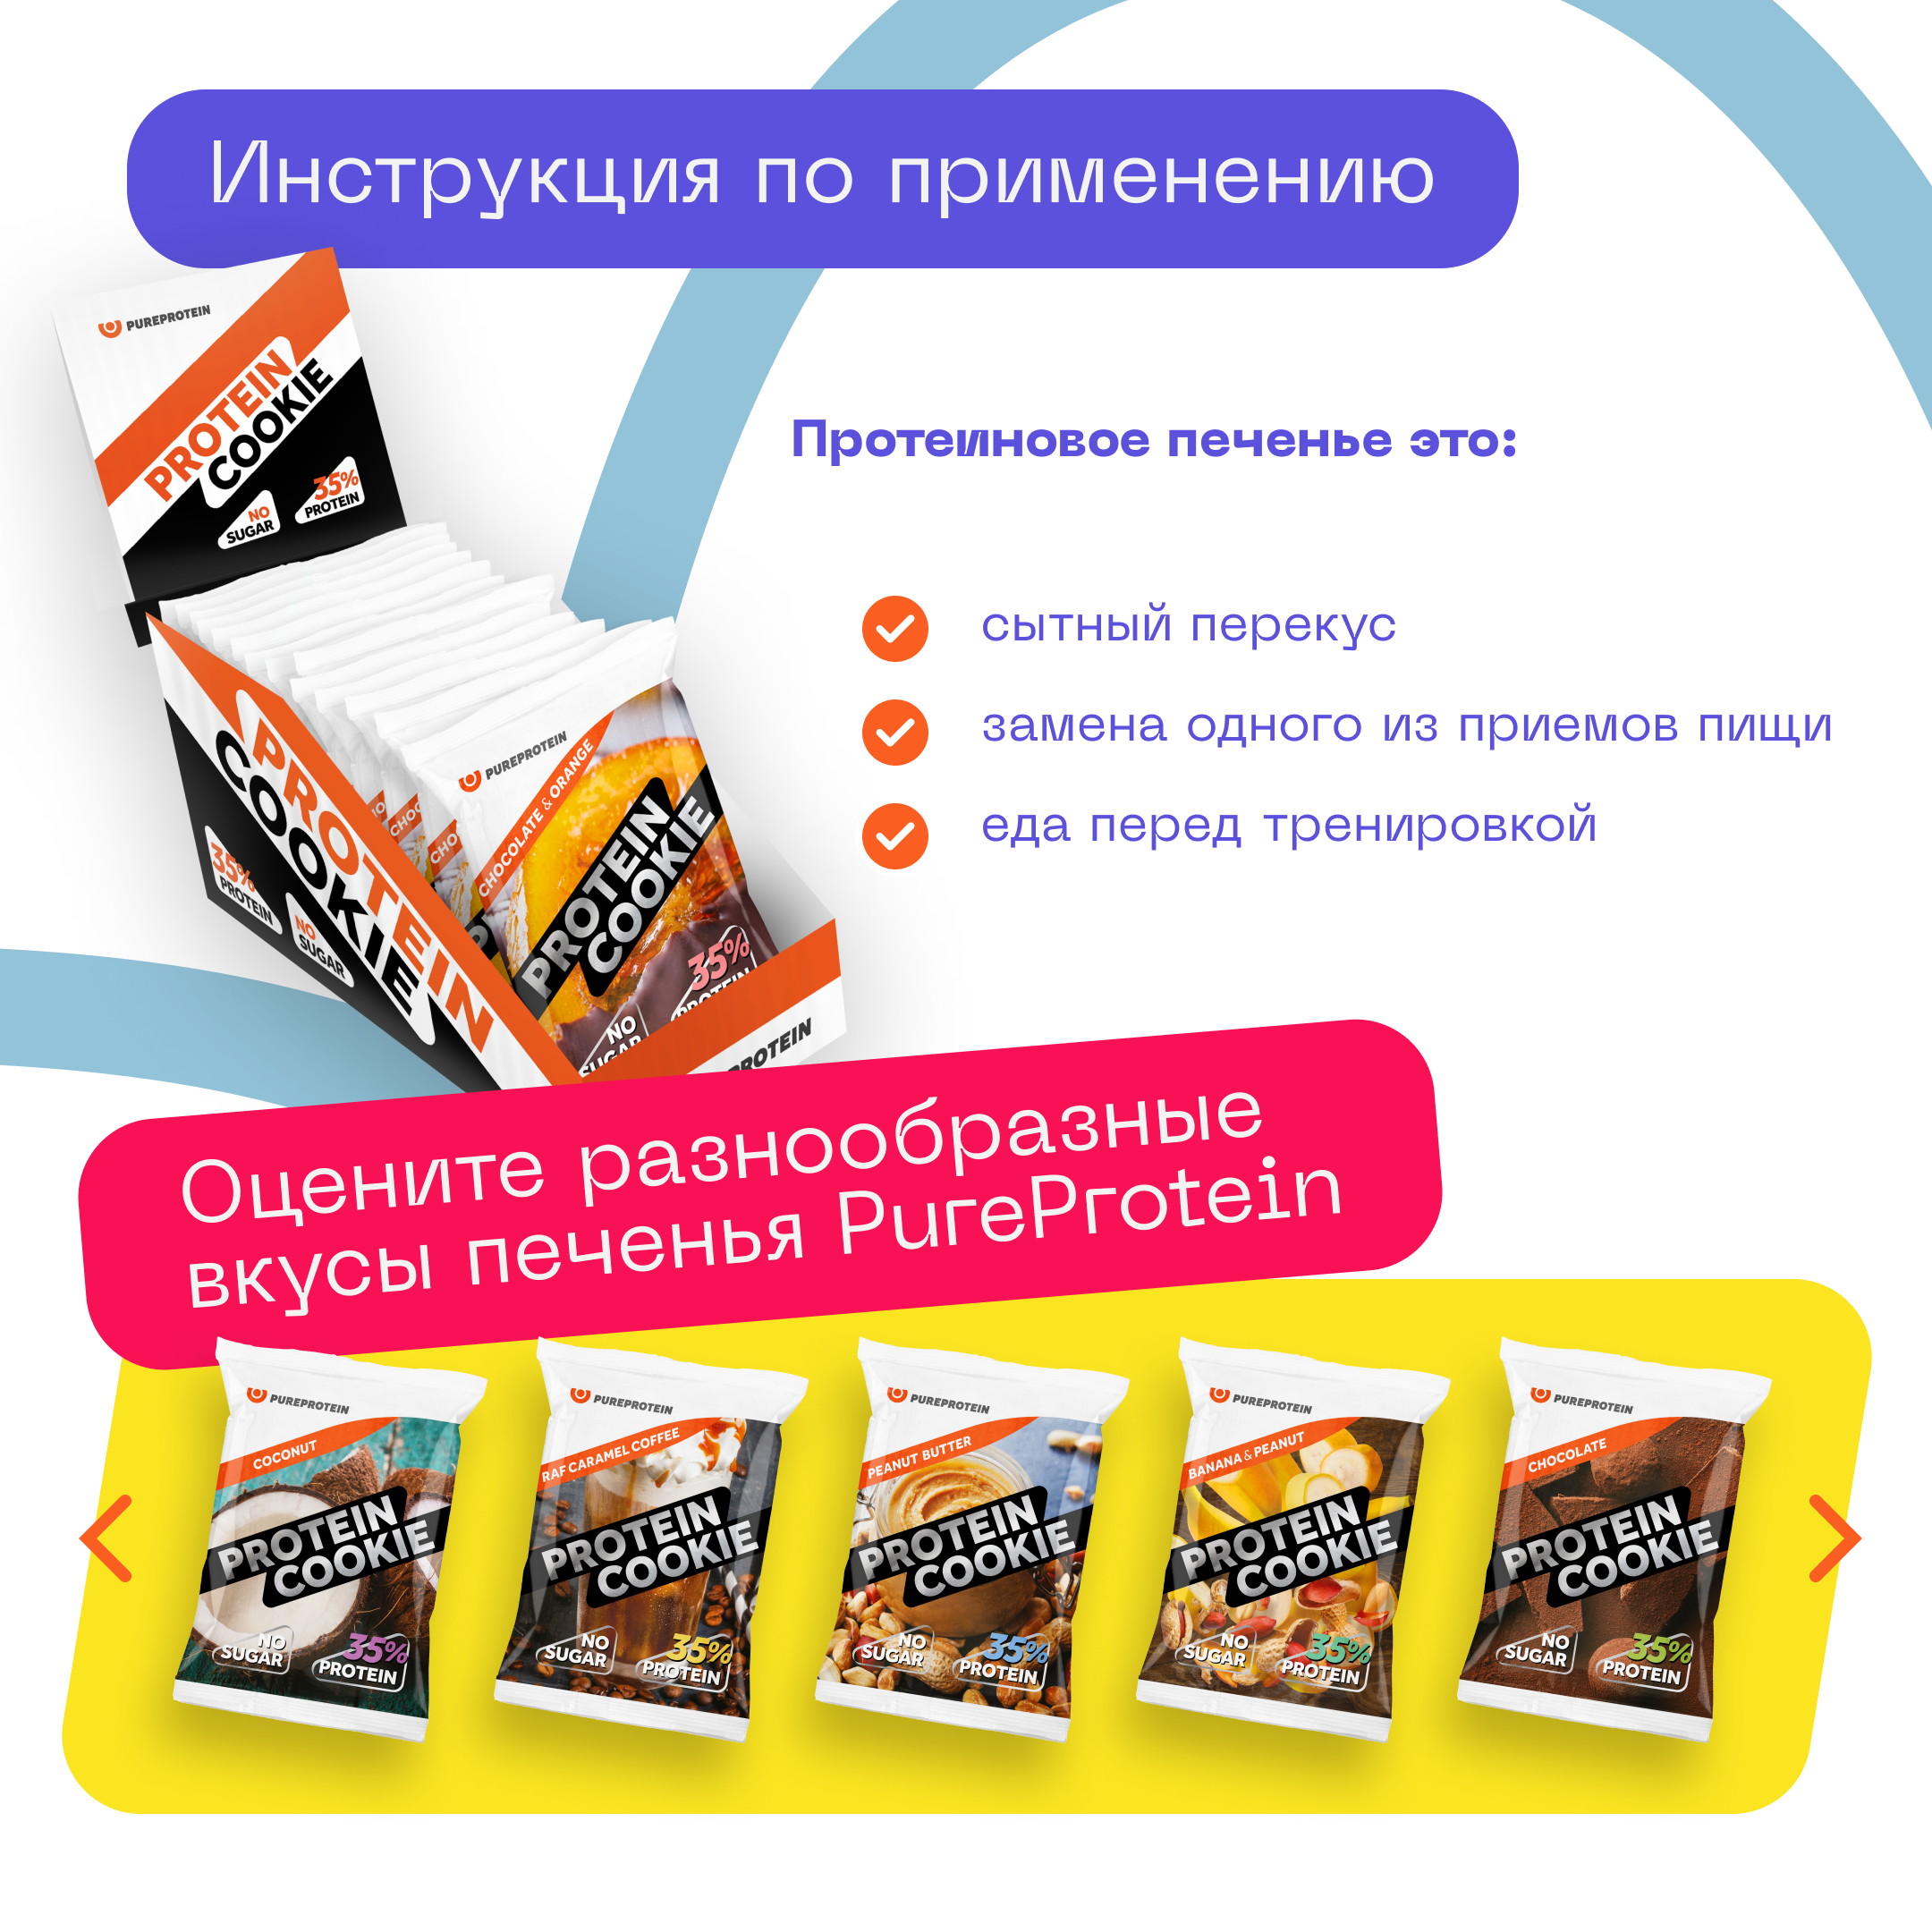 Протеиновое печенье Pureprotein "Шоколад - Апельсин", 14шт по 40гр